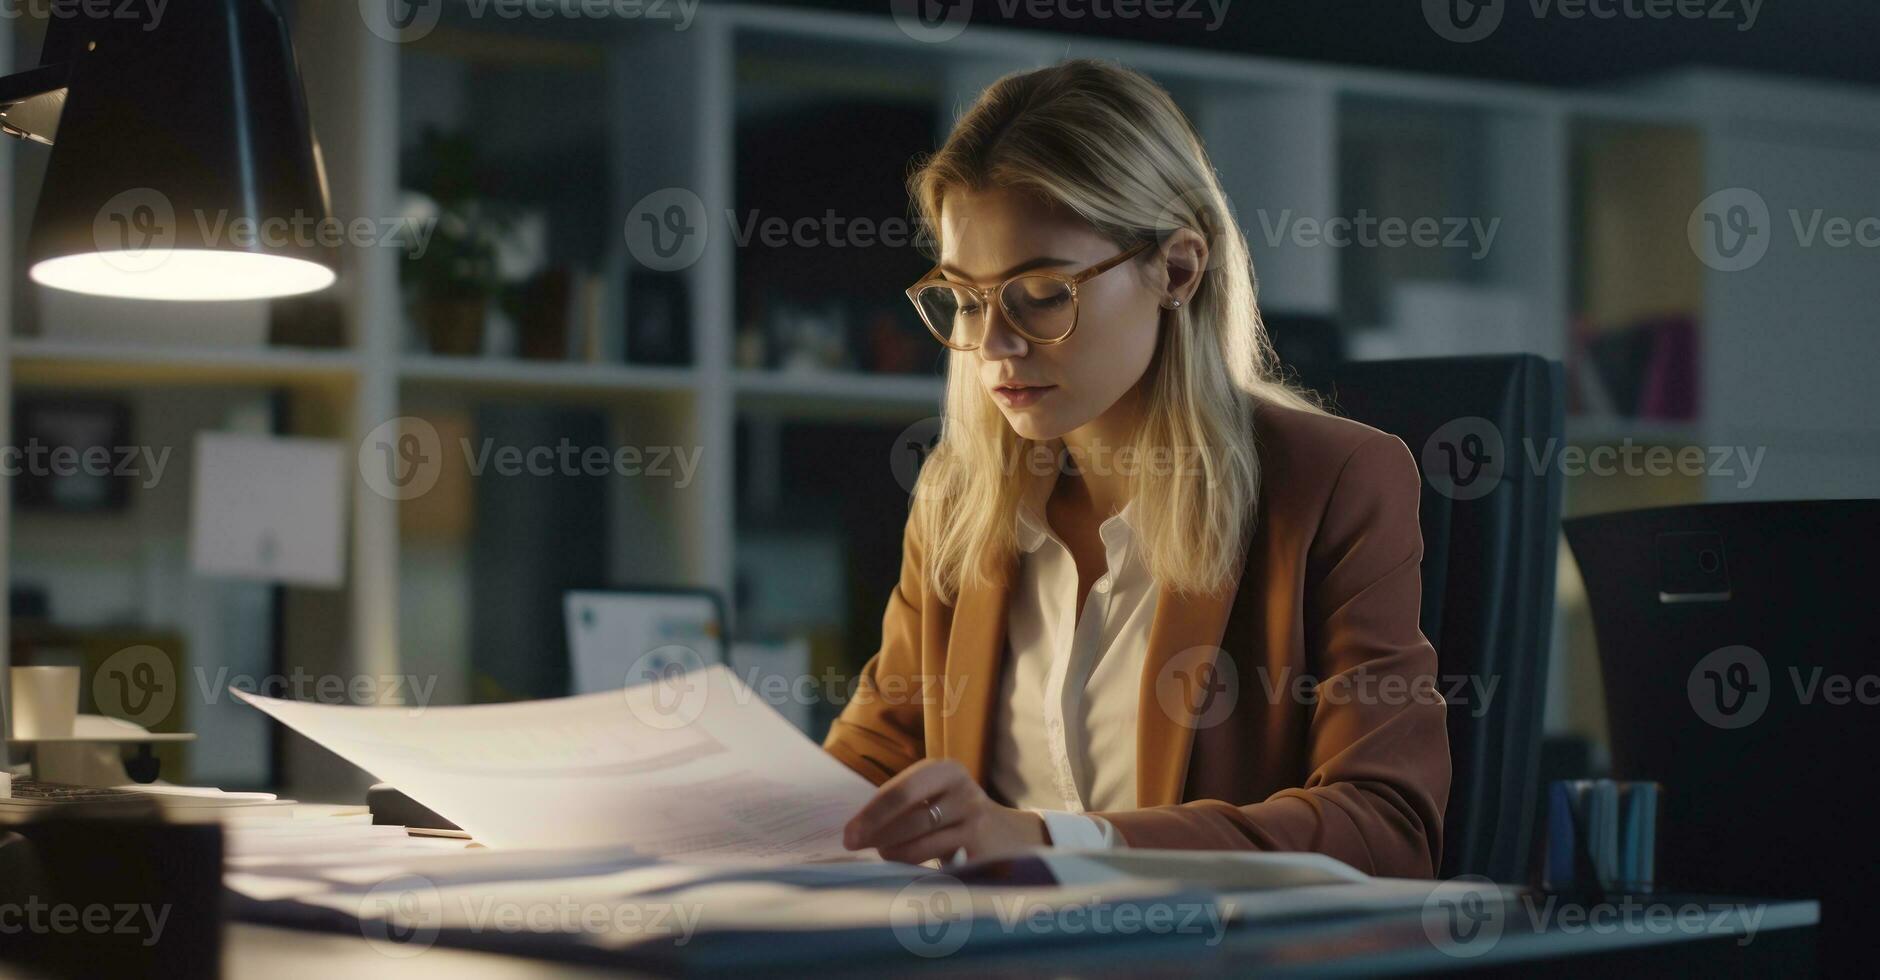 ett kontor assistent organisering filer på en dator i en väl upplyst kontor, med dokument och brevpapper på henne skrivbord foto